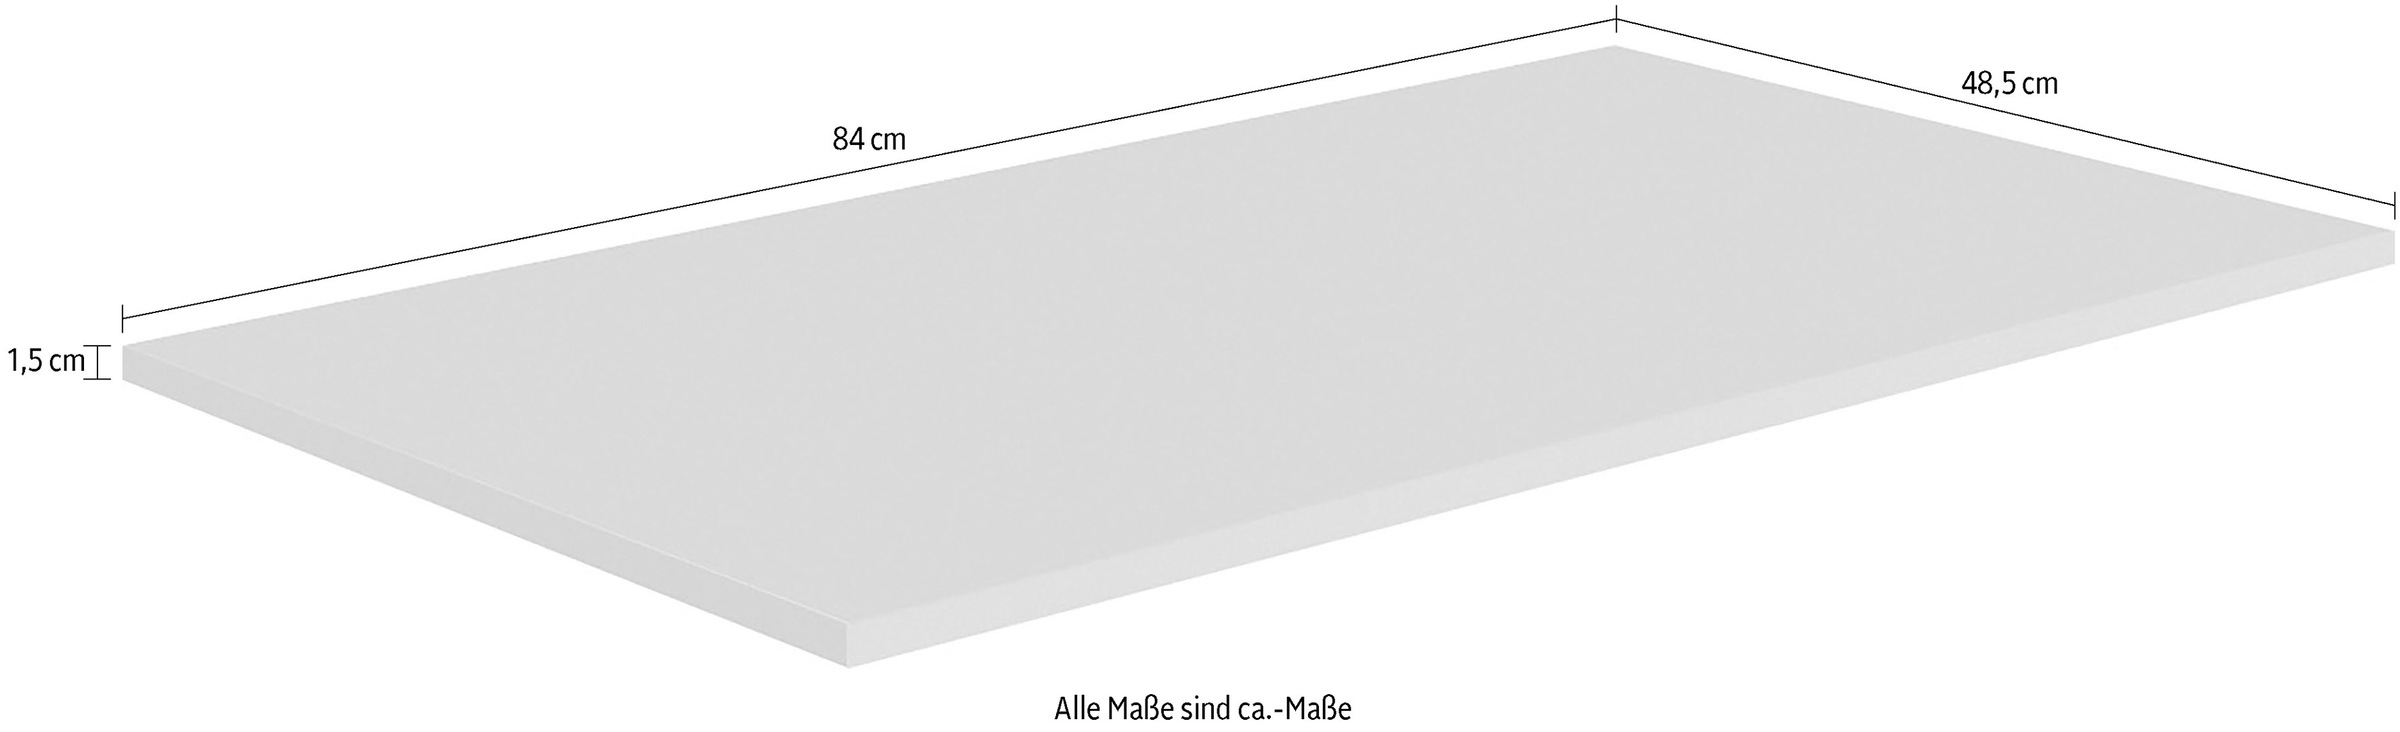 Transland Einlegeboden »NEA, by PAIDI«, Stauraum individuell anpassen mit zusätzlichen Einlegeböden